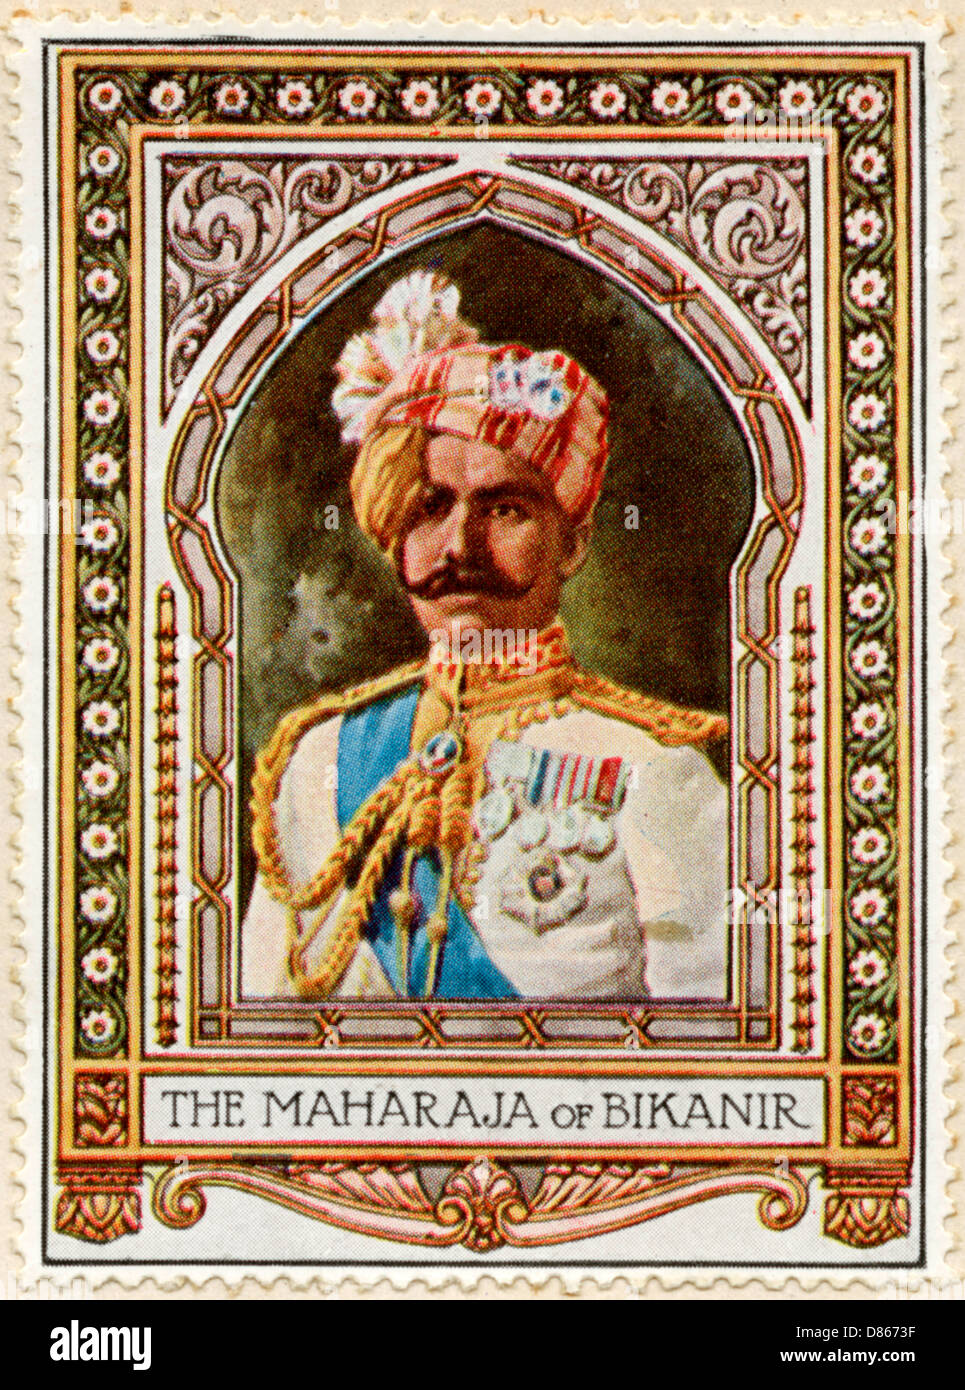 Maharaja of Bikaner / Stamp Stock Photo